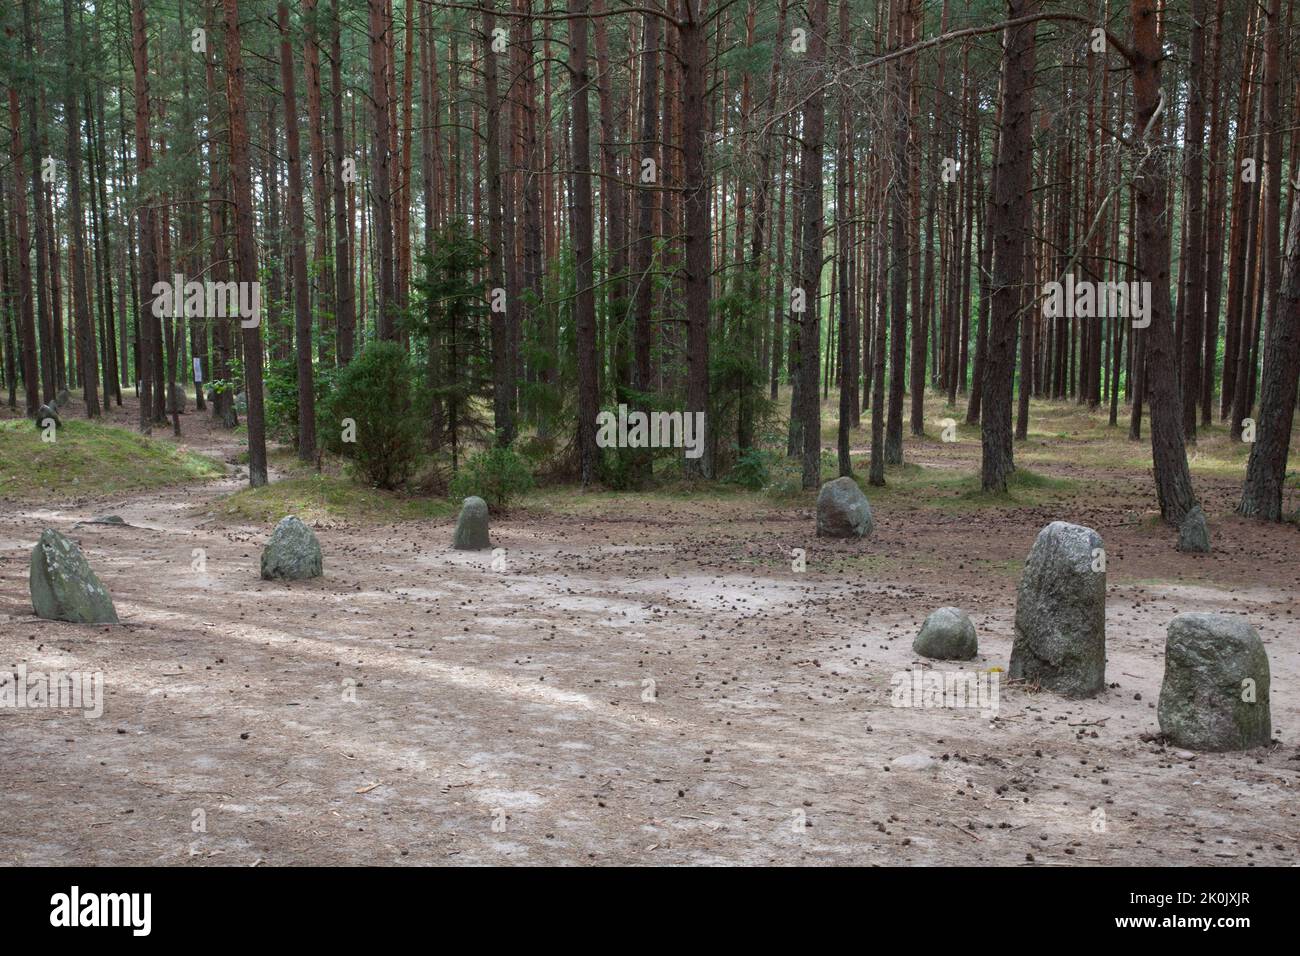 Cercles de pierre mégalithique en Węsiory Pologne - Kamienne kręgi Węsiory Polska Banque D'Images